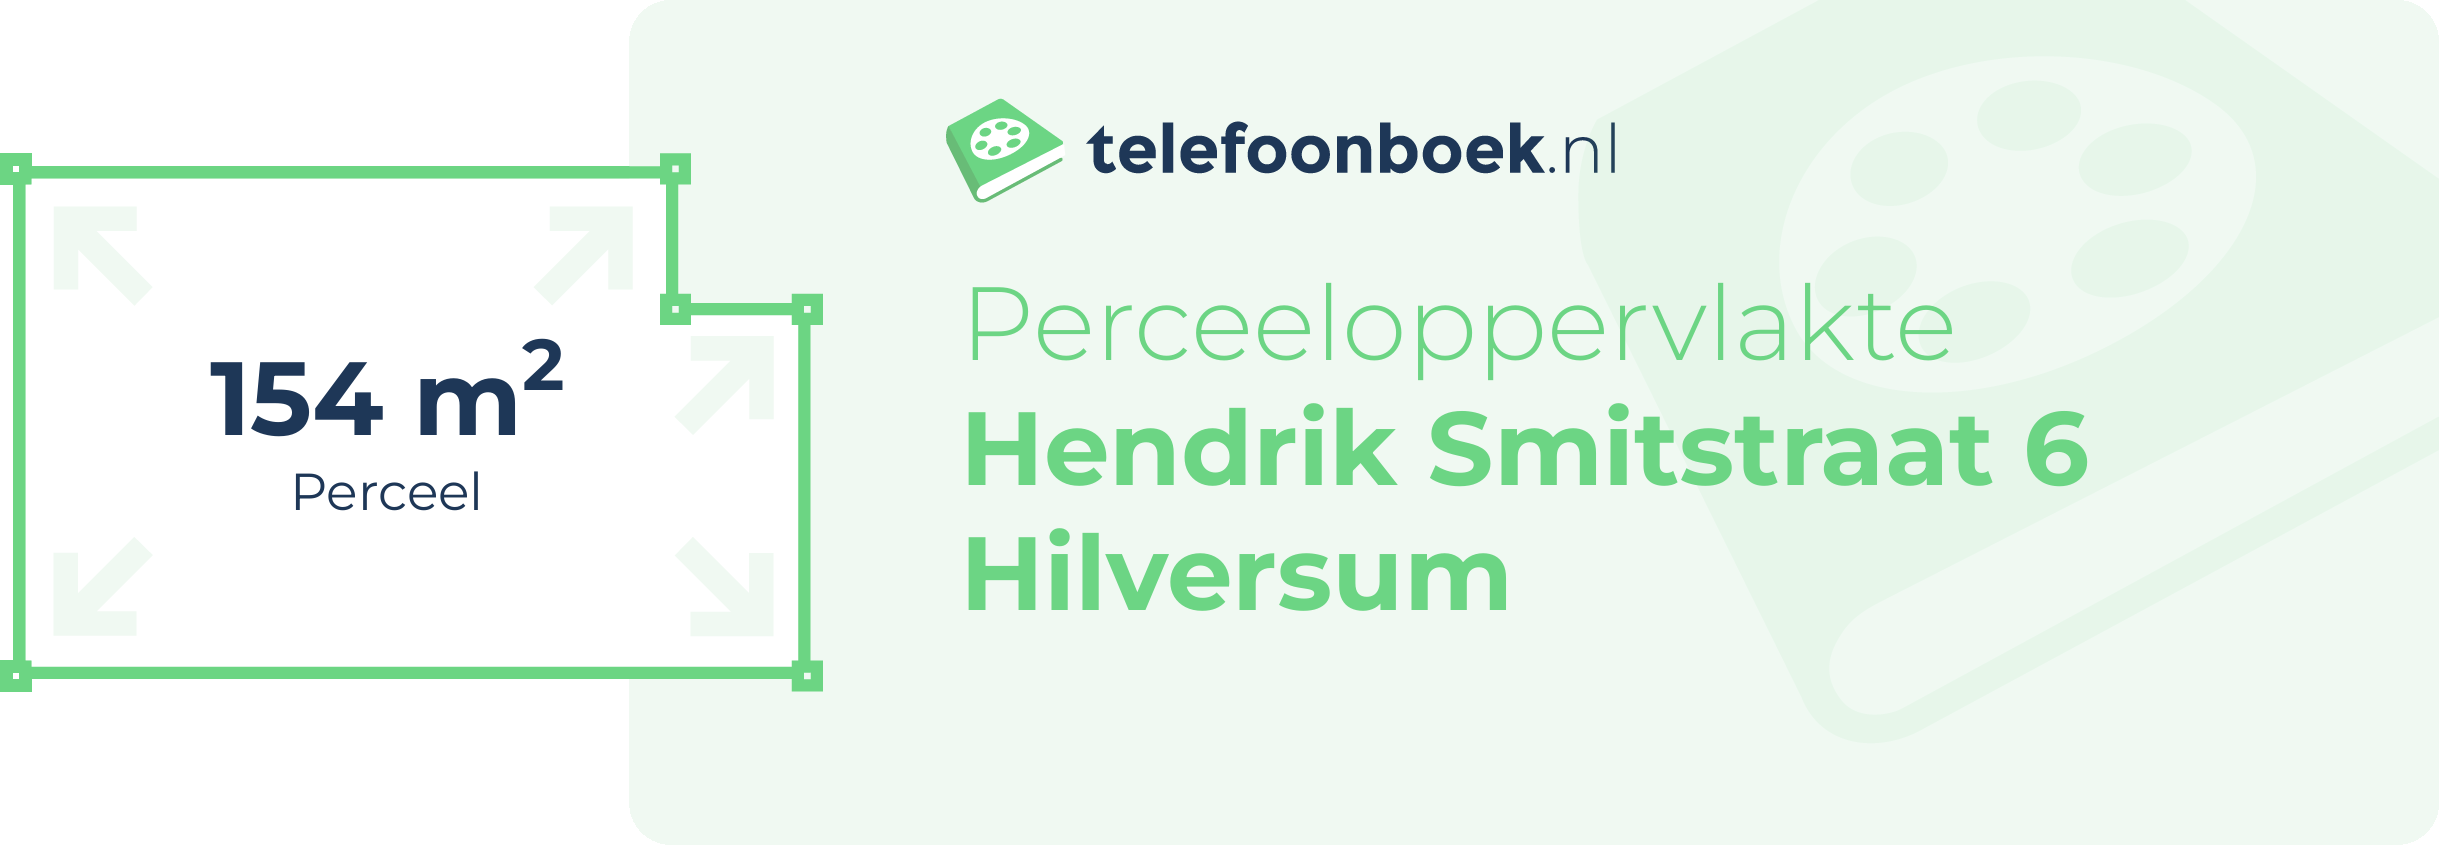 Perceeloppervlakte Hendrik Smitstraat 6 Hilversum